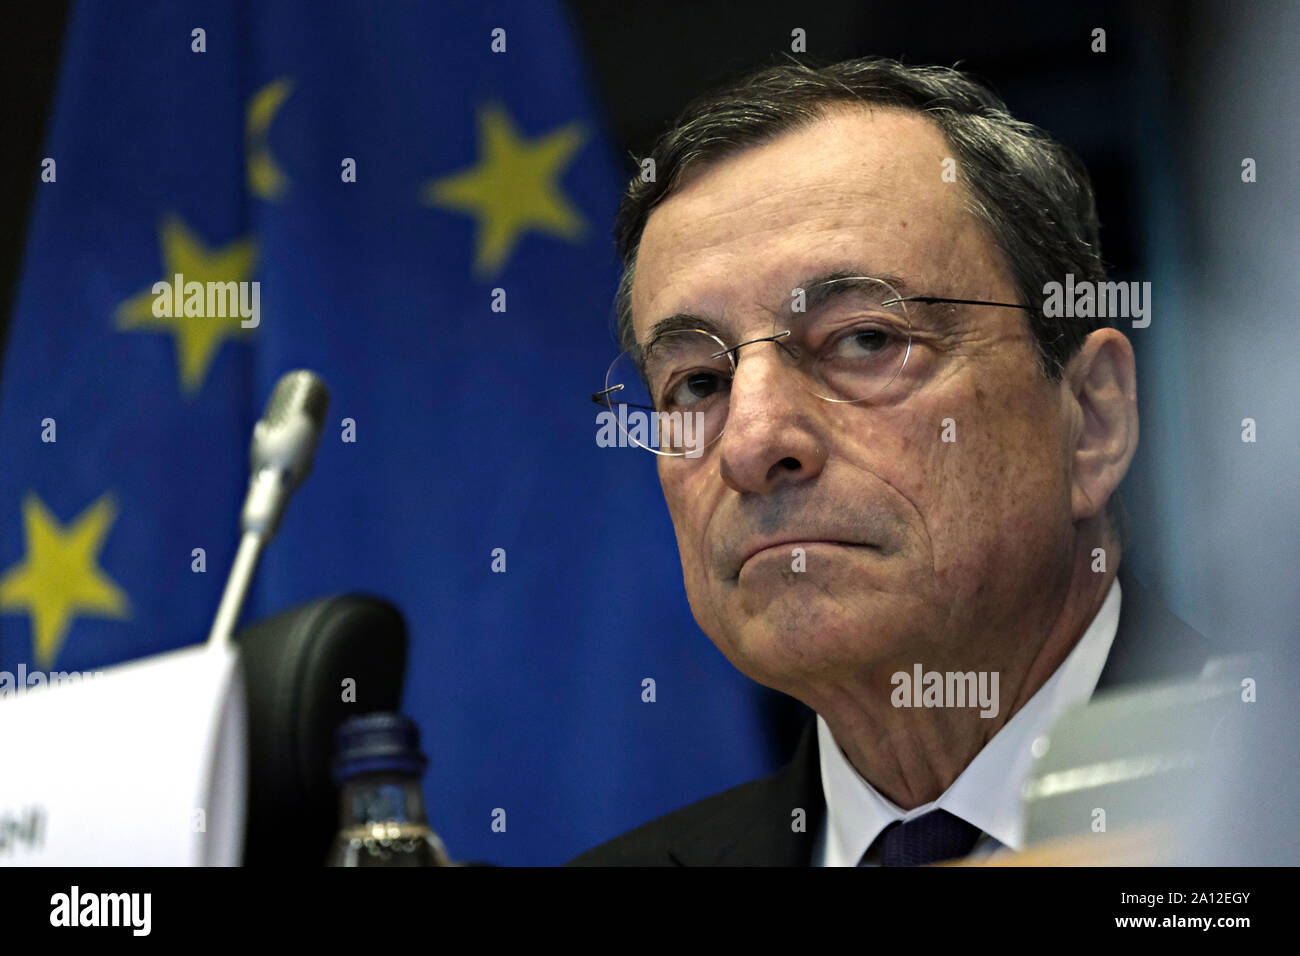 Brüssel, Belgien. 23. September 2019. Der Präsident der Europäischen Zentralbank (EZB) Mario Draghi bei einer Anhörung des Europäischen Parlaments Ausschuss für Wirtschaft und Währung. Credit: ALEXANDROS MICHAILIDIS/Alamy leben Nachrichten Stockfoto